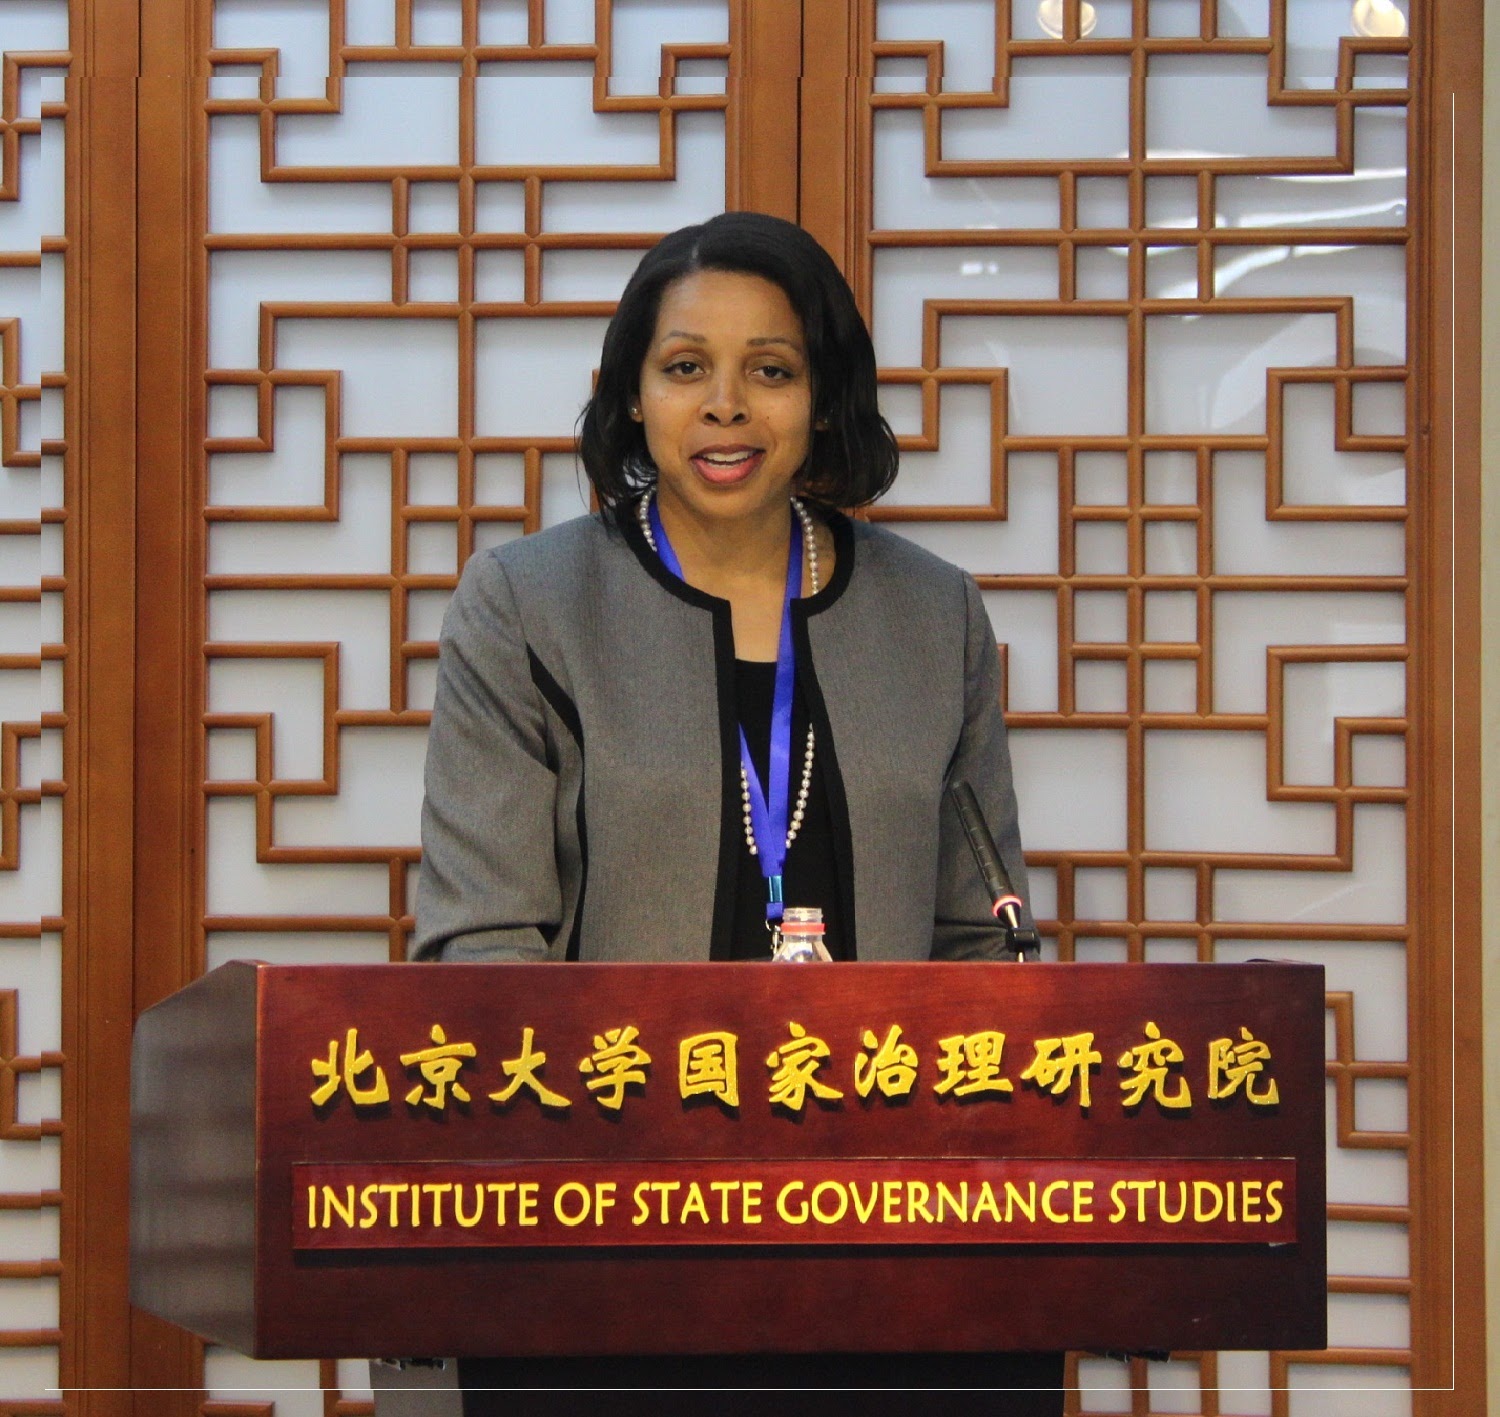 Dr. Jackson-Weaver speaking at Peking University in China